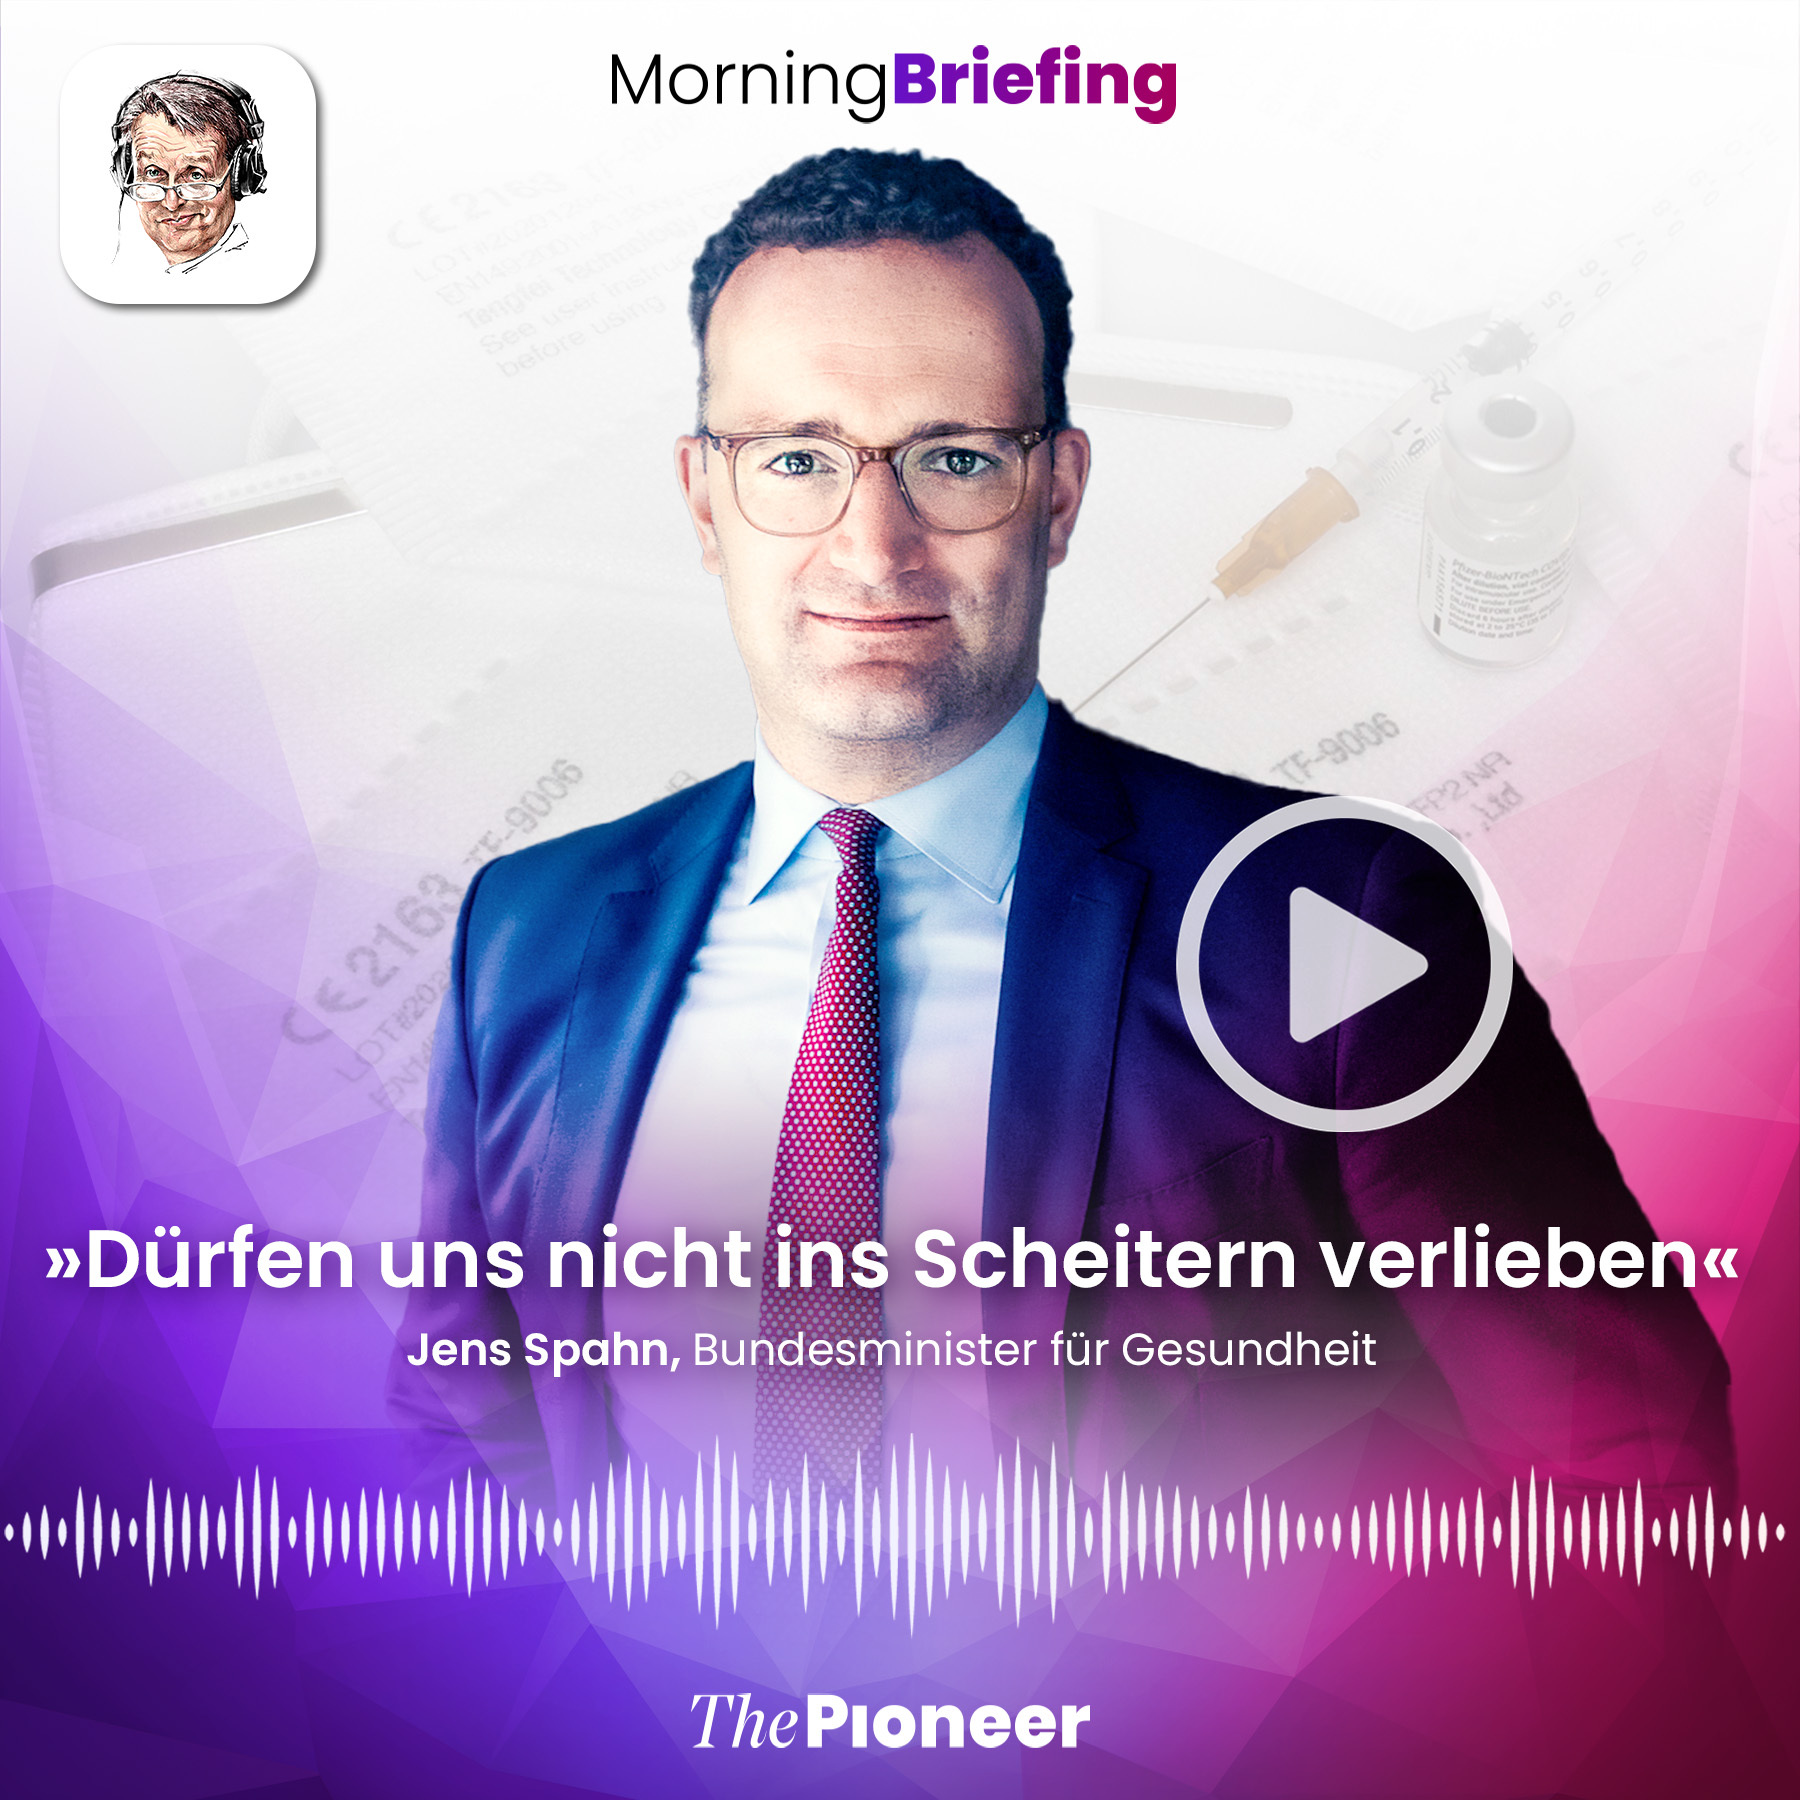 20210329-podcast-morning-briefing-media-pioneer-spahn (1)